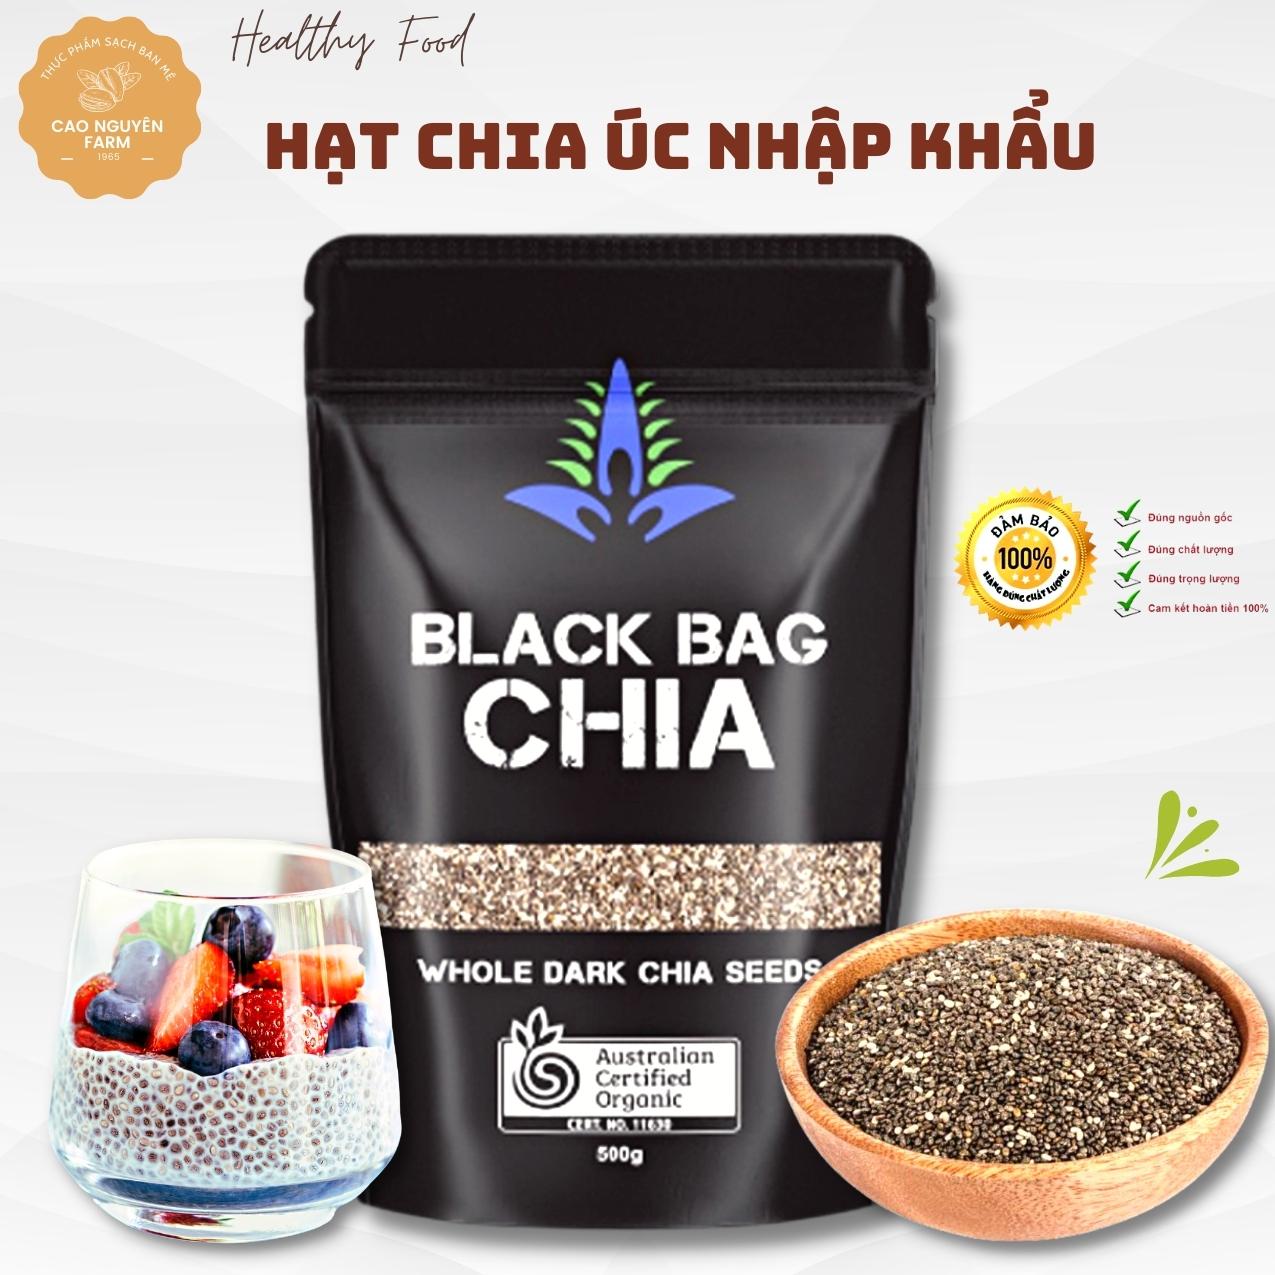 Hạt Chia Úc Black Bag Healthy 500g dùng ăn kiêng, giảm cân, ăn chay eatclean, tốt cho bà bầu, người bị tiểu đường, Absolute Organic, ăn Healthy - Cao Nguyên Farm thumbnail